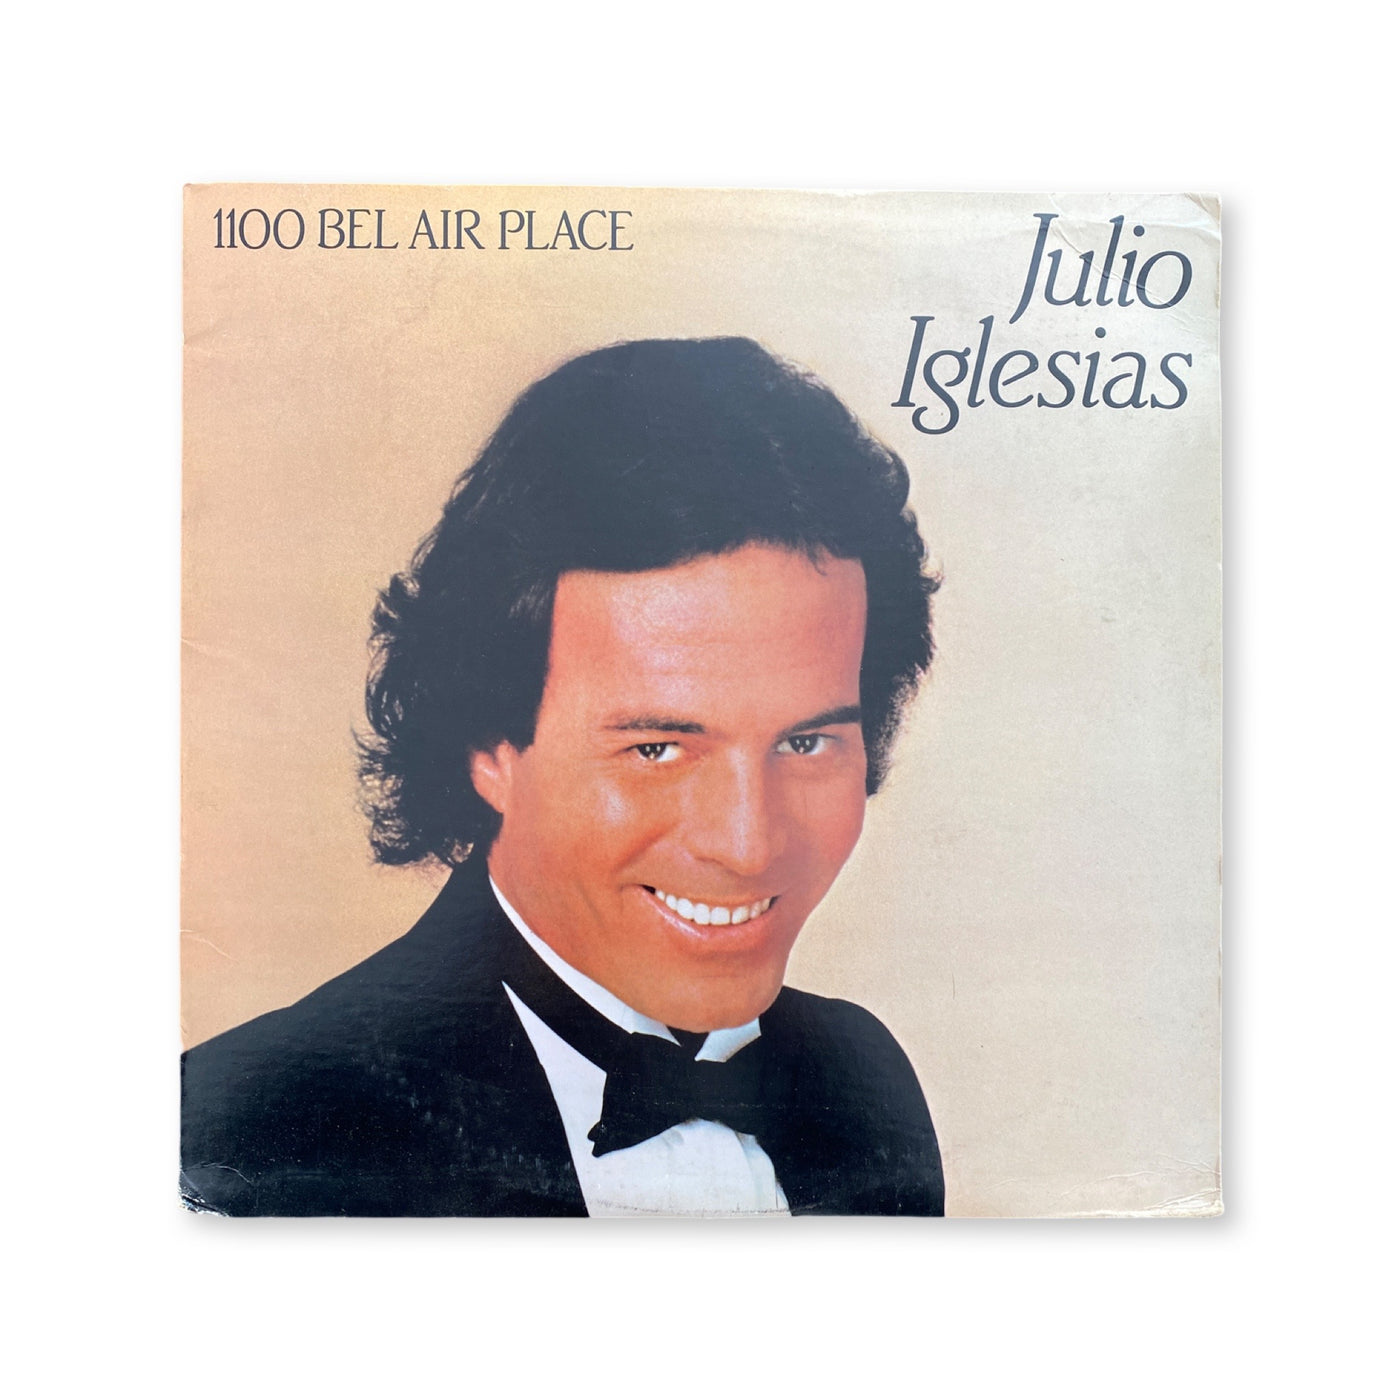 Julio Iglesias - 1100 Bel Air Place